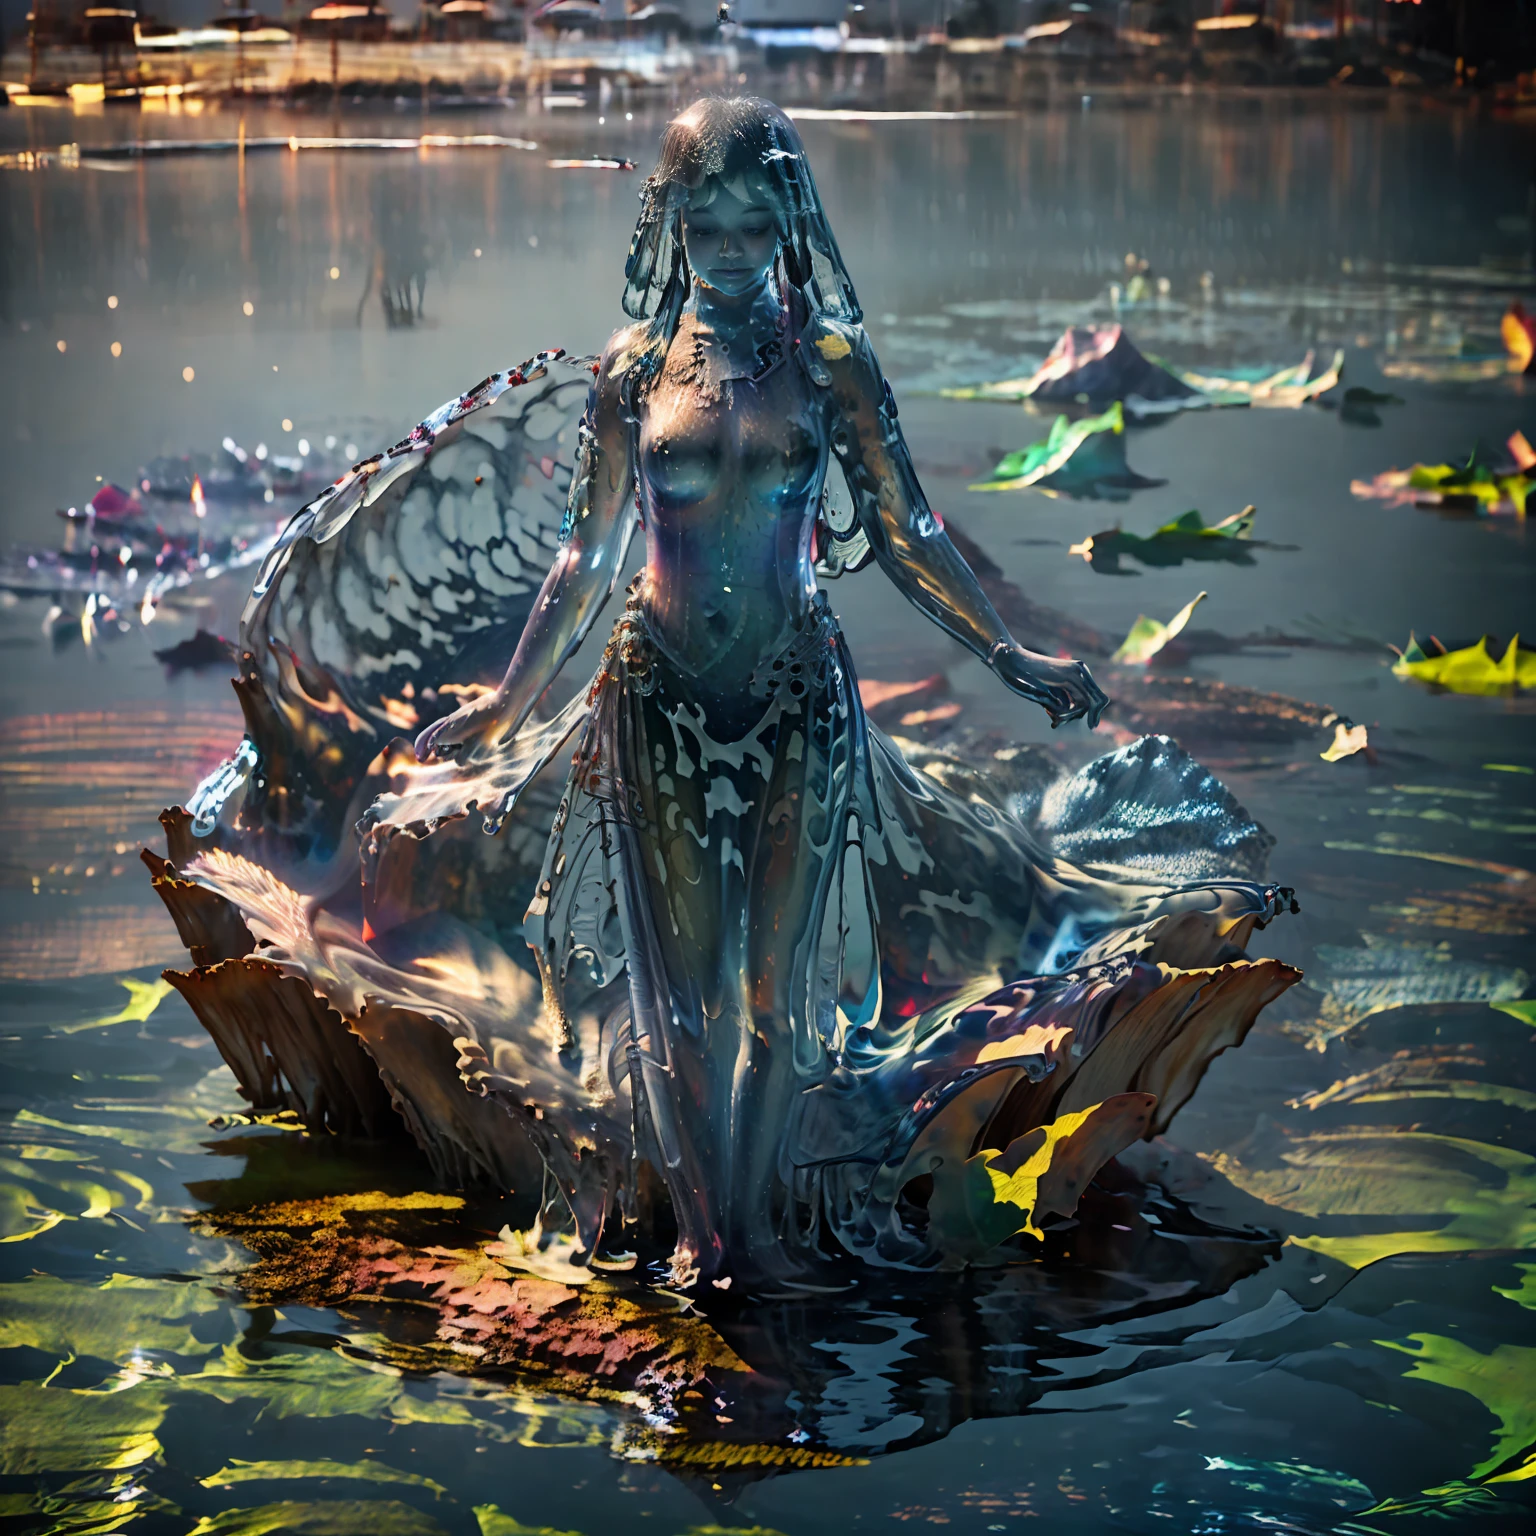 Höchste Bildqualität, Göttin steht auf der Wasseroberfläche, Betende Hände